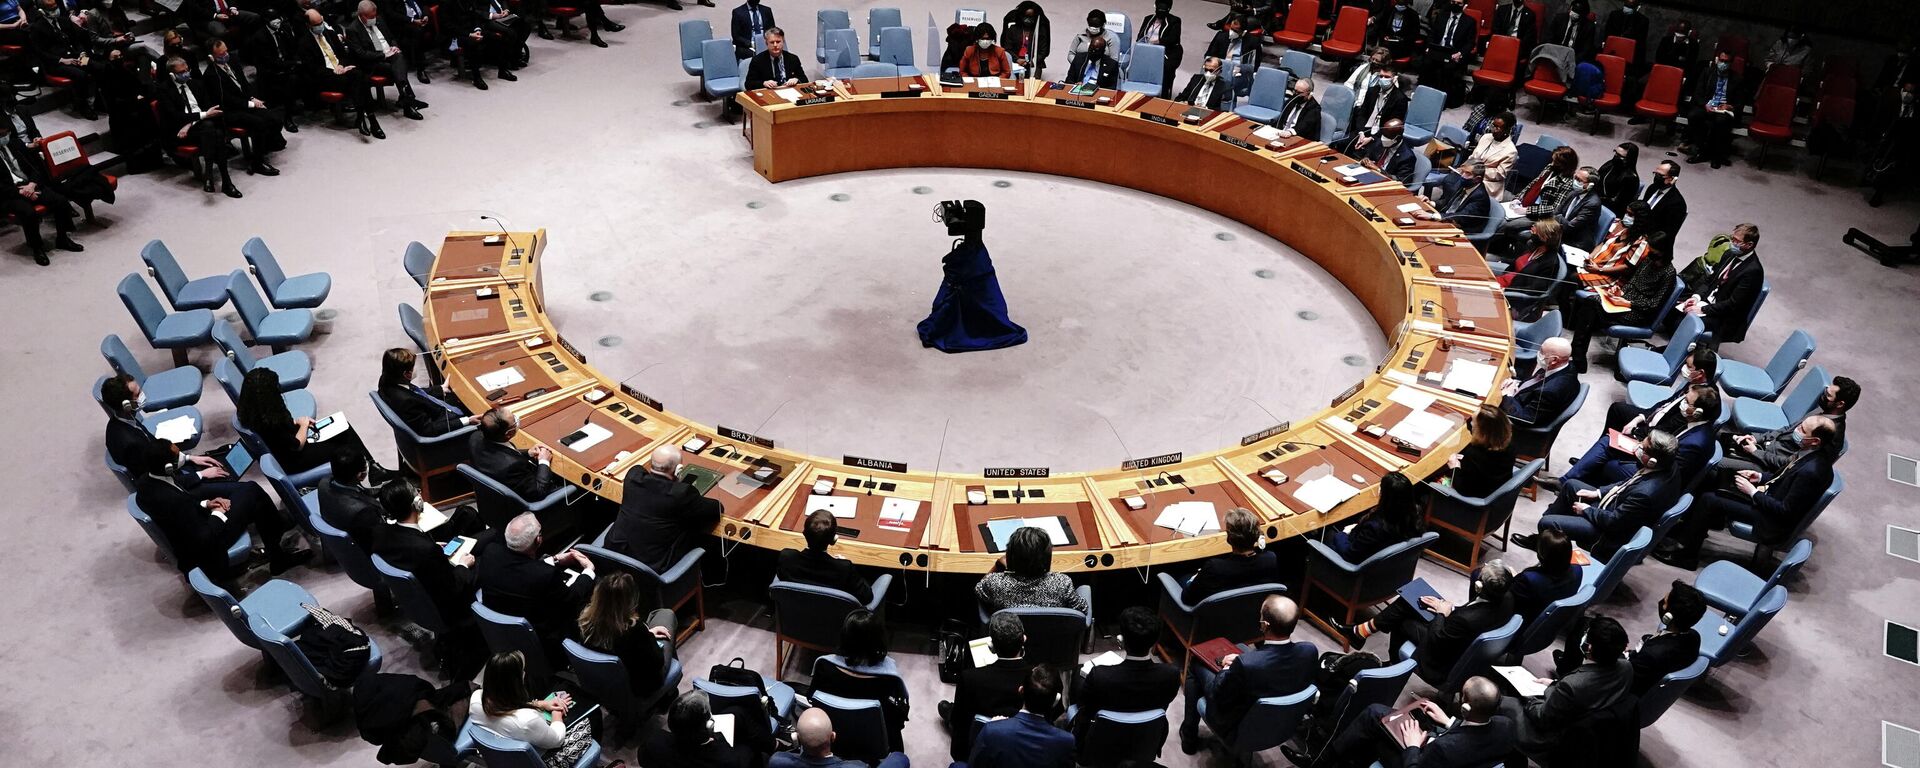 Birleşmiş Milletler Güvenlik Konseyi'nin (BMGK) Ukrayna oylaması - Sputnik Türkiye, 1920, 26.02.2022